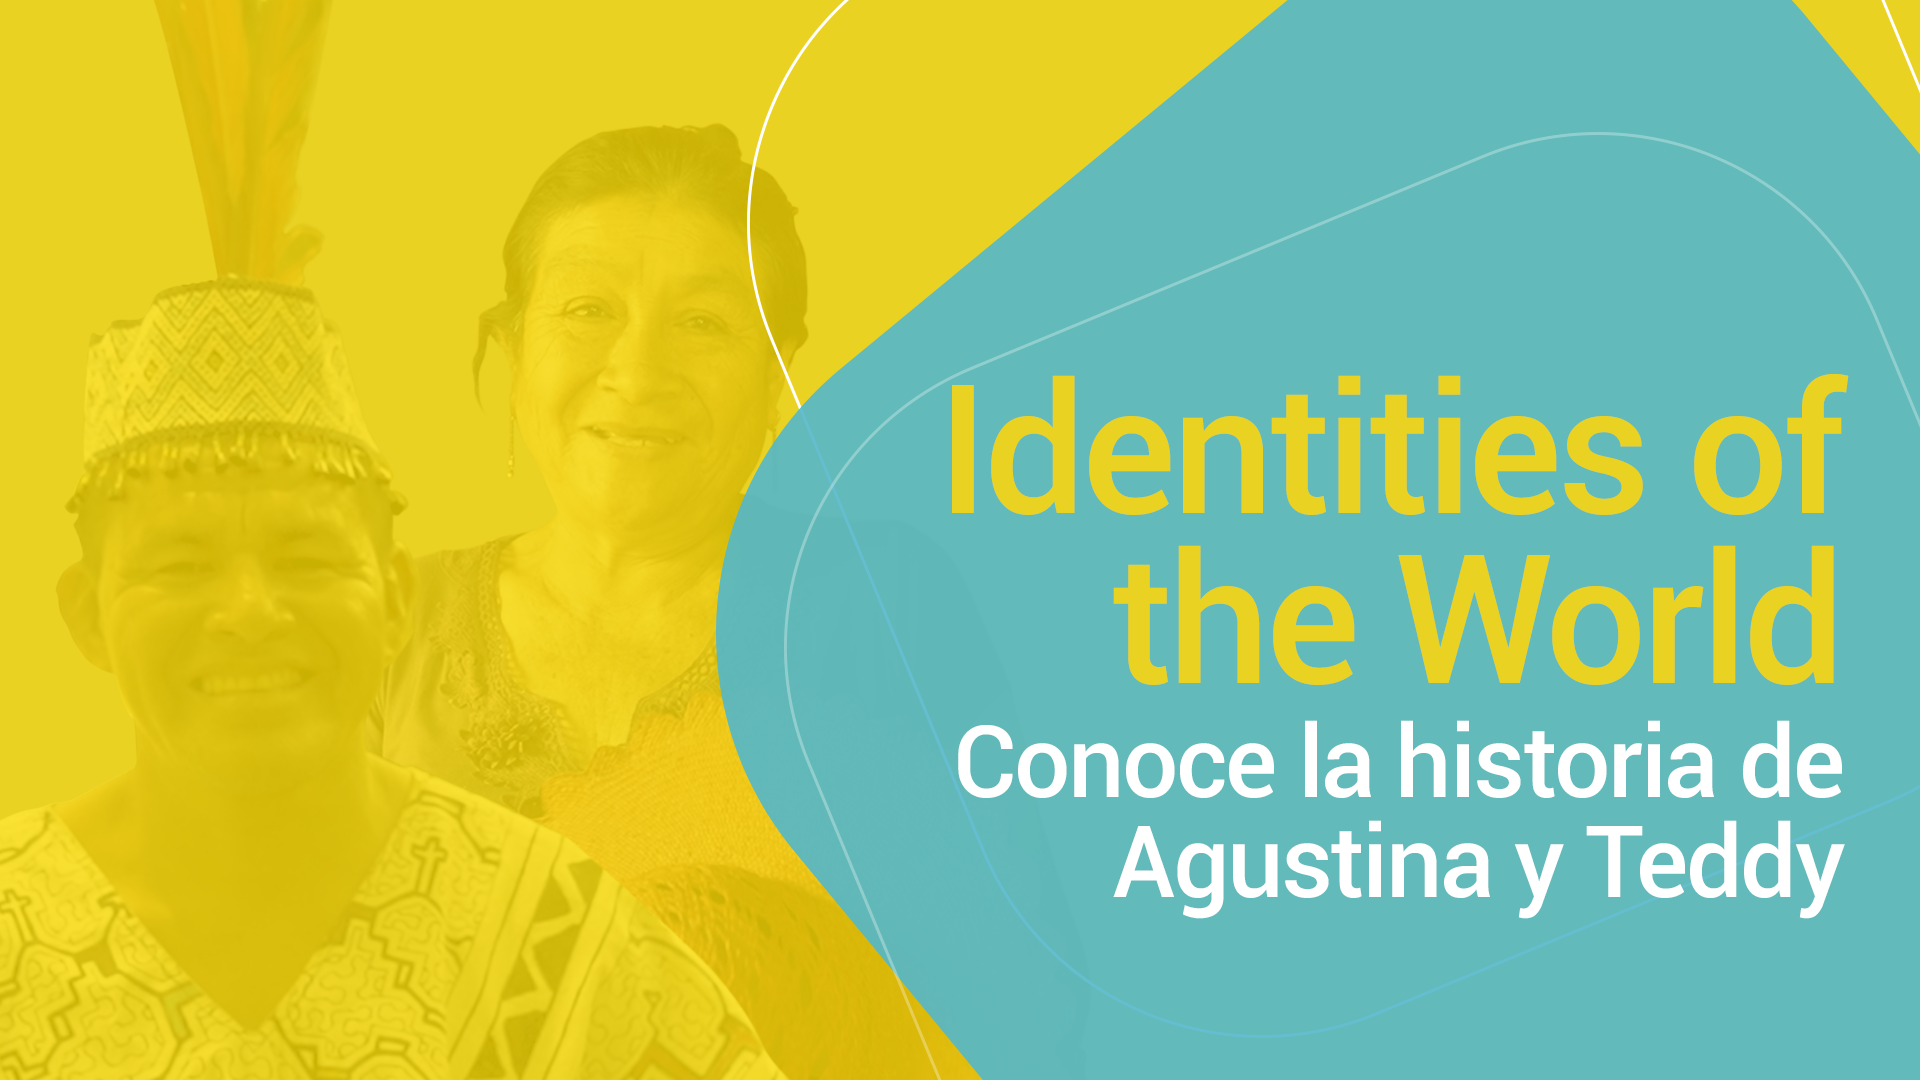 Experian trae la iniciativa "Identities of the World" al Perú para promover la inclusión financiera